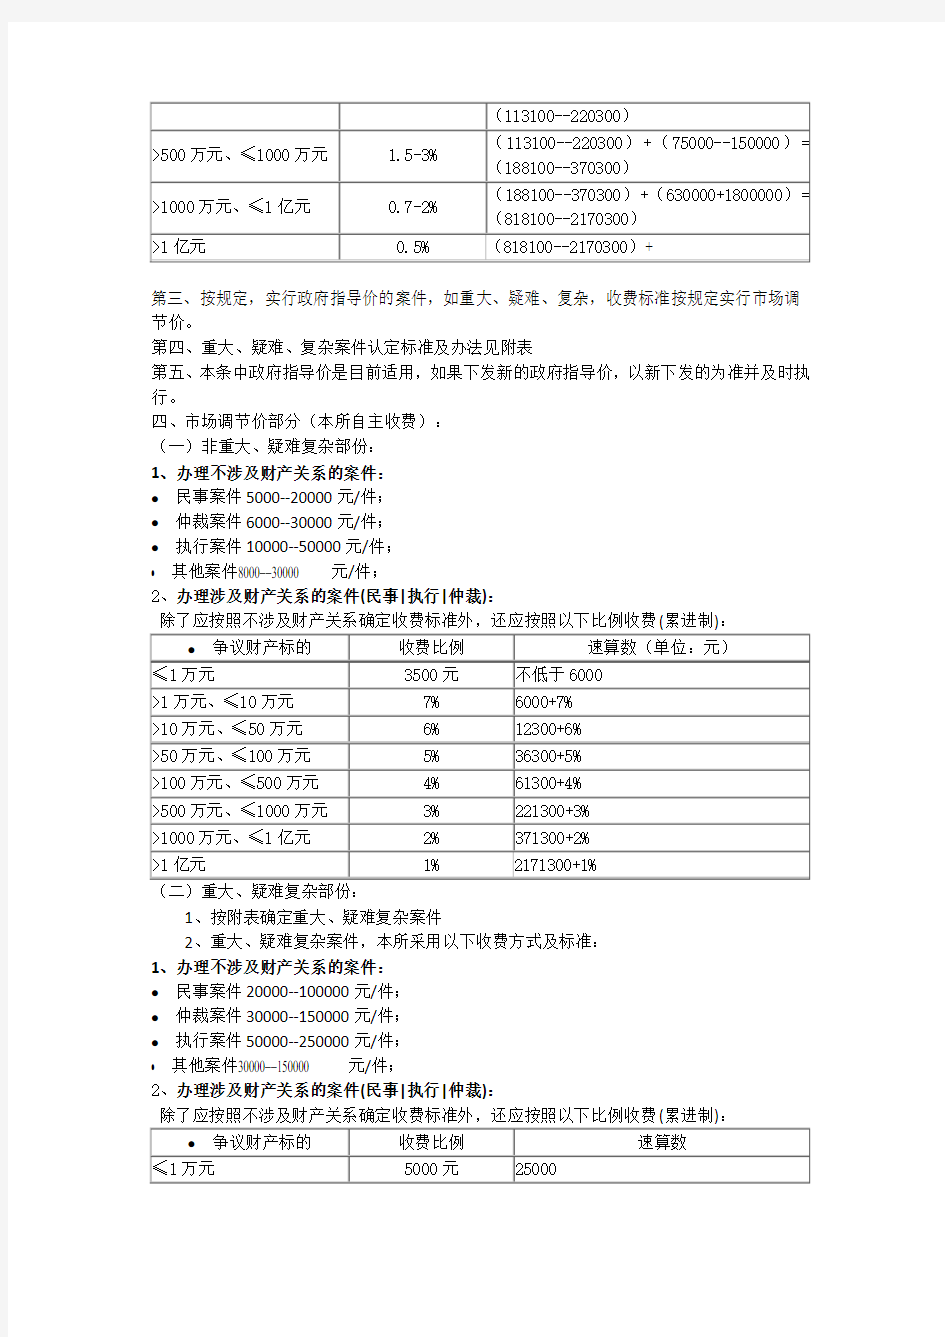 2017江苏省律师事务所收费标准